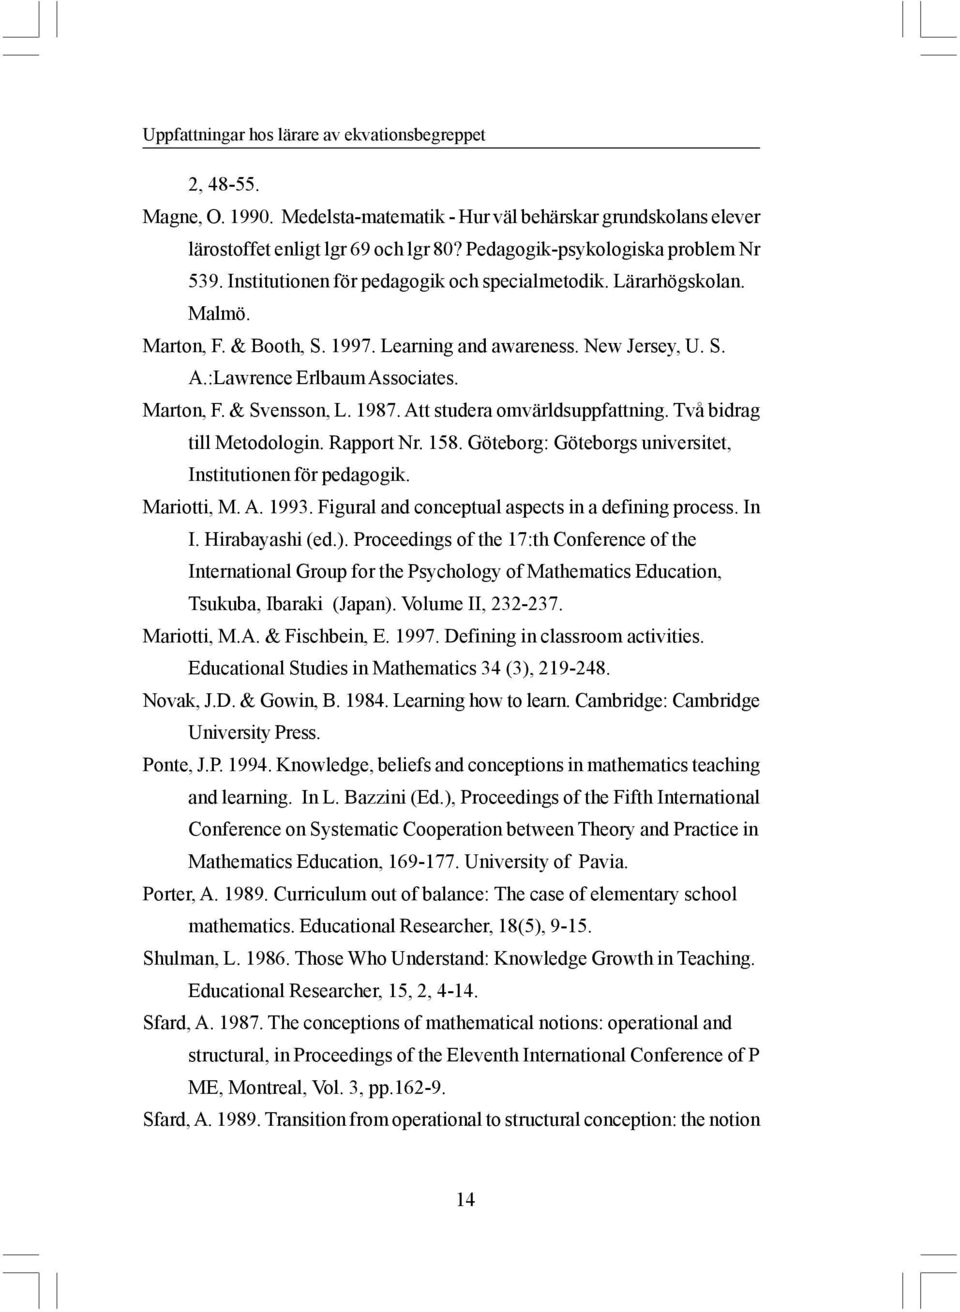 :Lawrence Erlbaum Associates. Marton, F. & Svensson, L. 1987. Att studera omvärldsuppfattning. Två bidrag till Metodologin. Rapport Nr. 158.